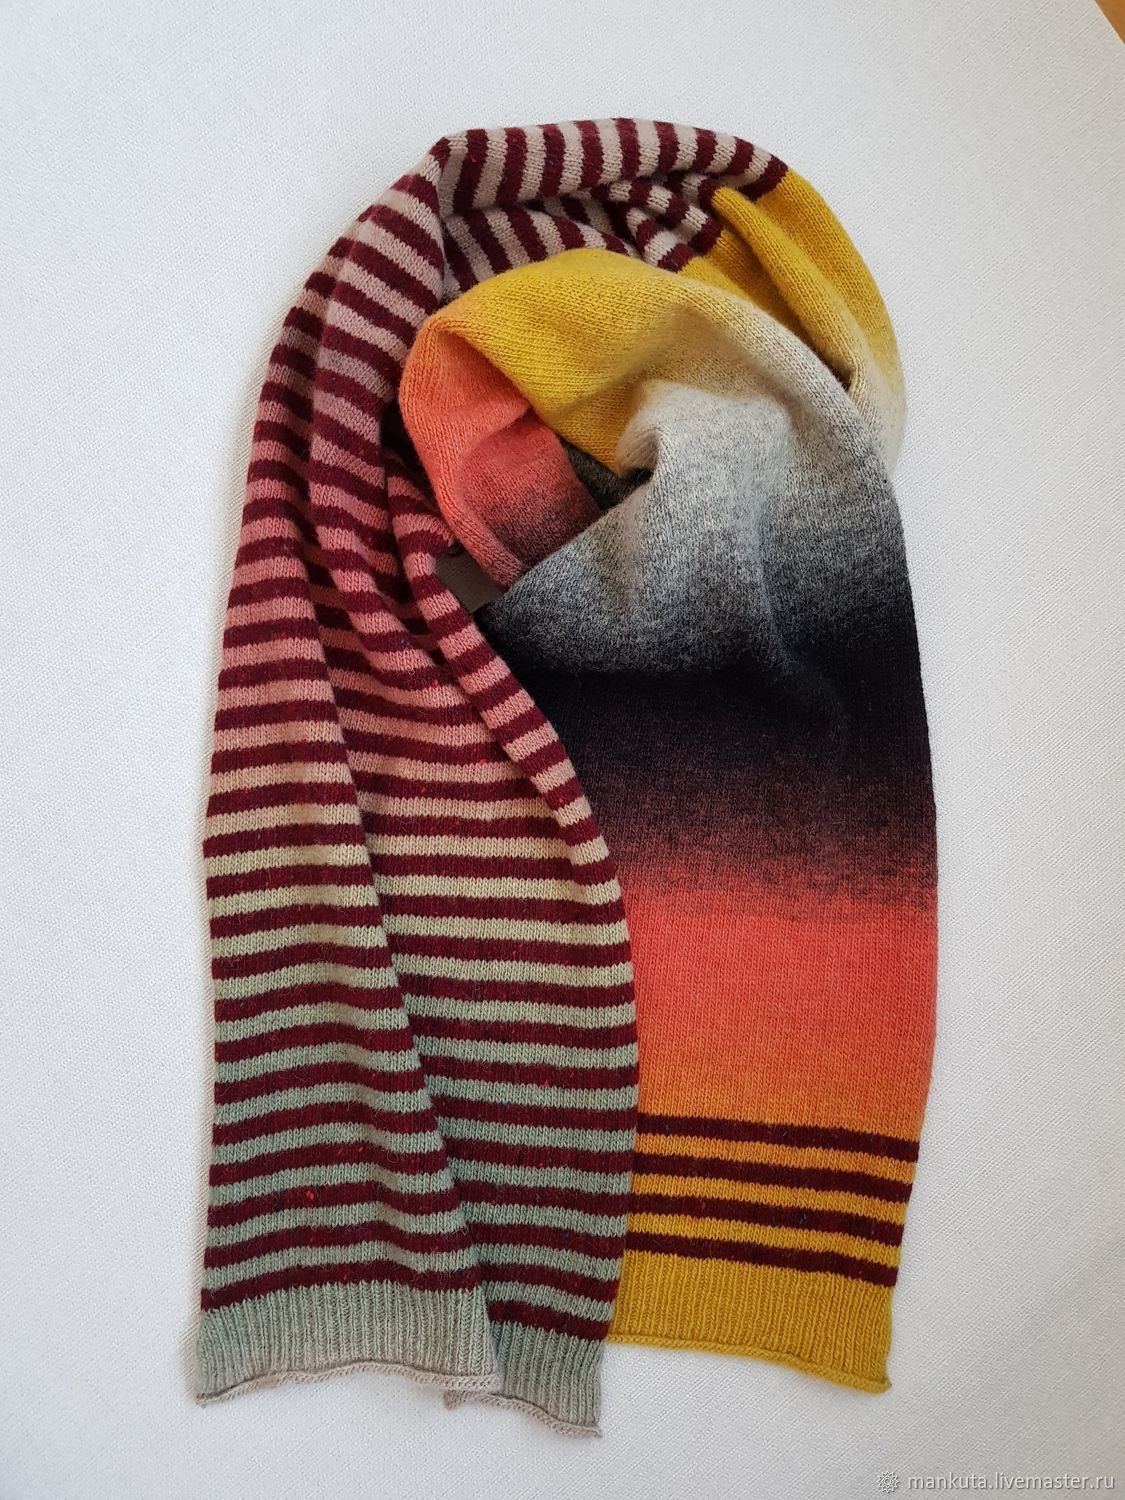 Полосатый шарф